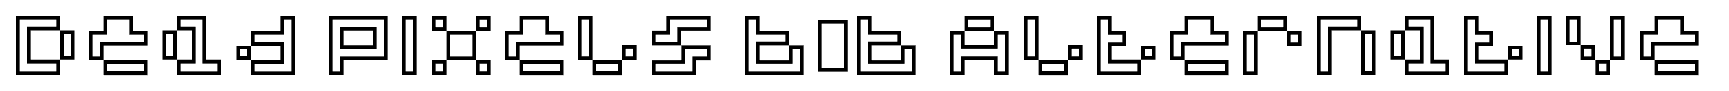 Dead Pixels 6×6 Alternative font